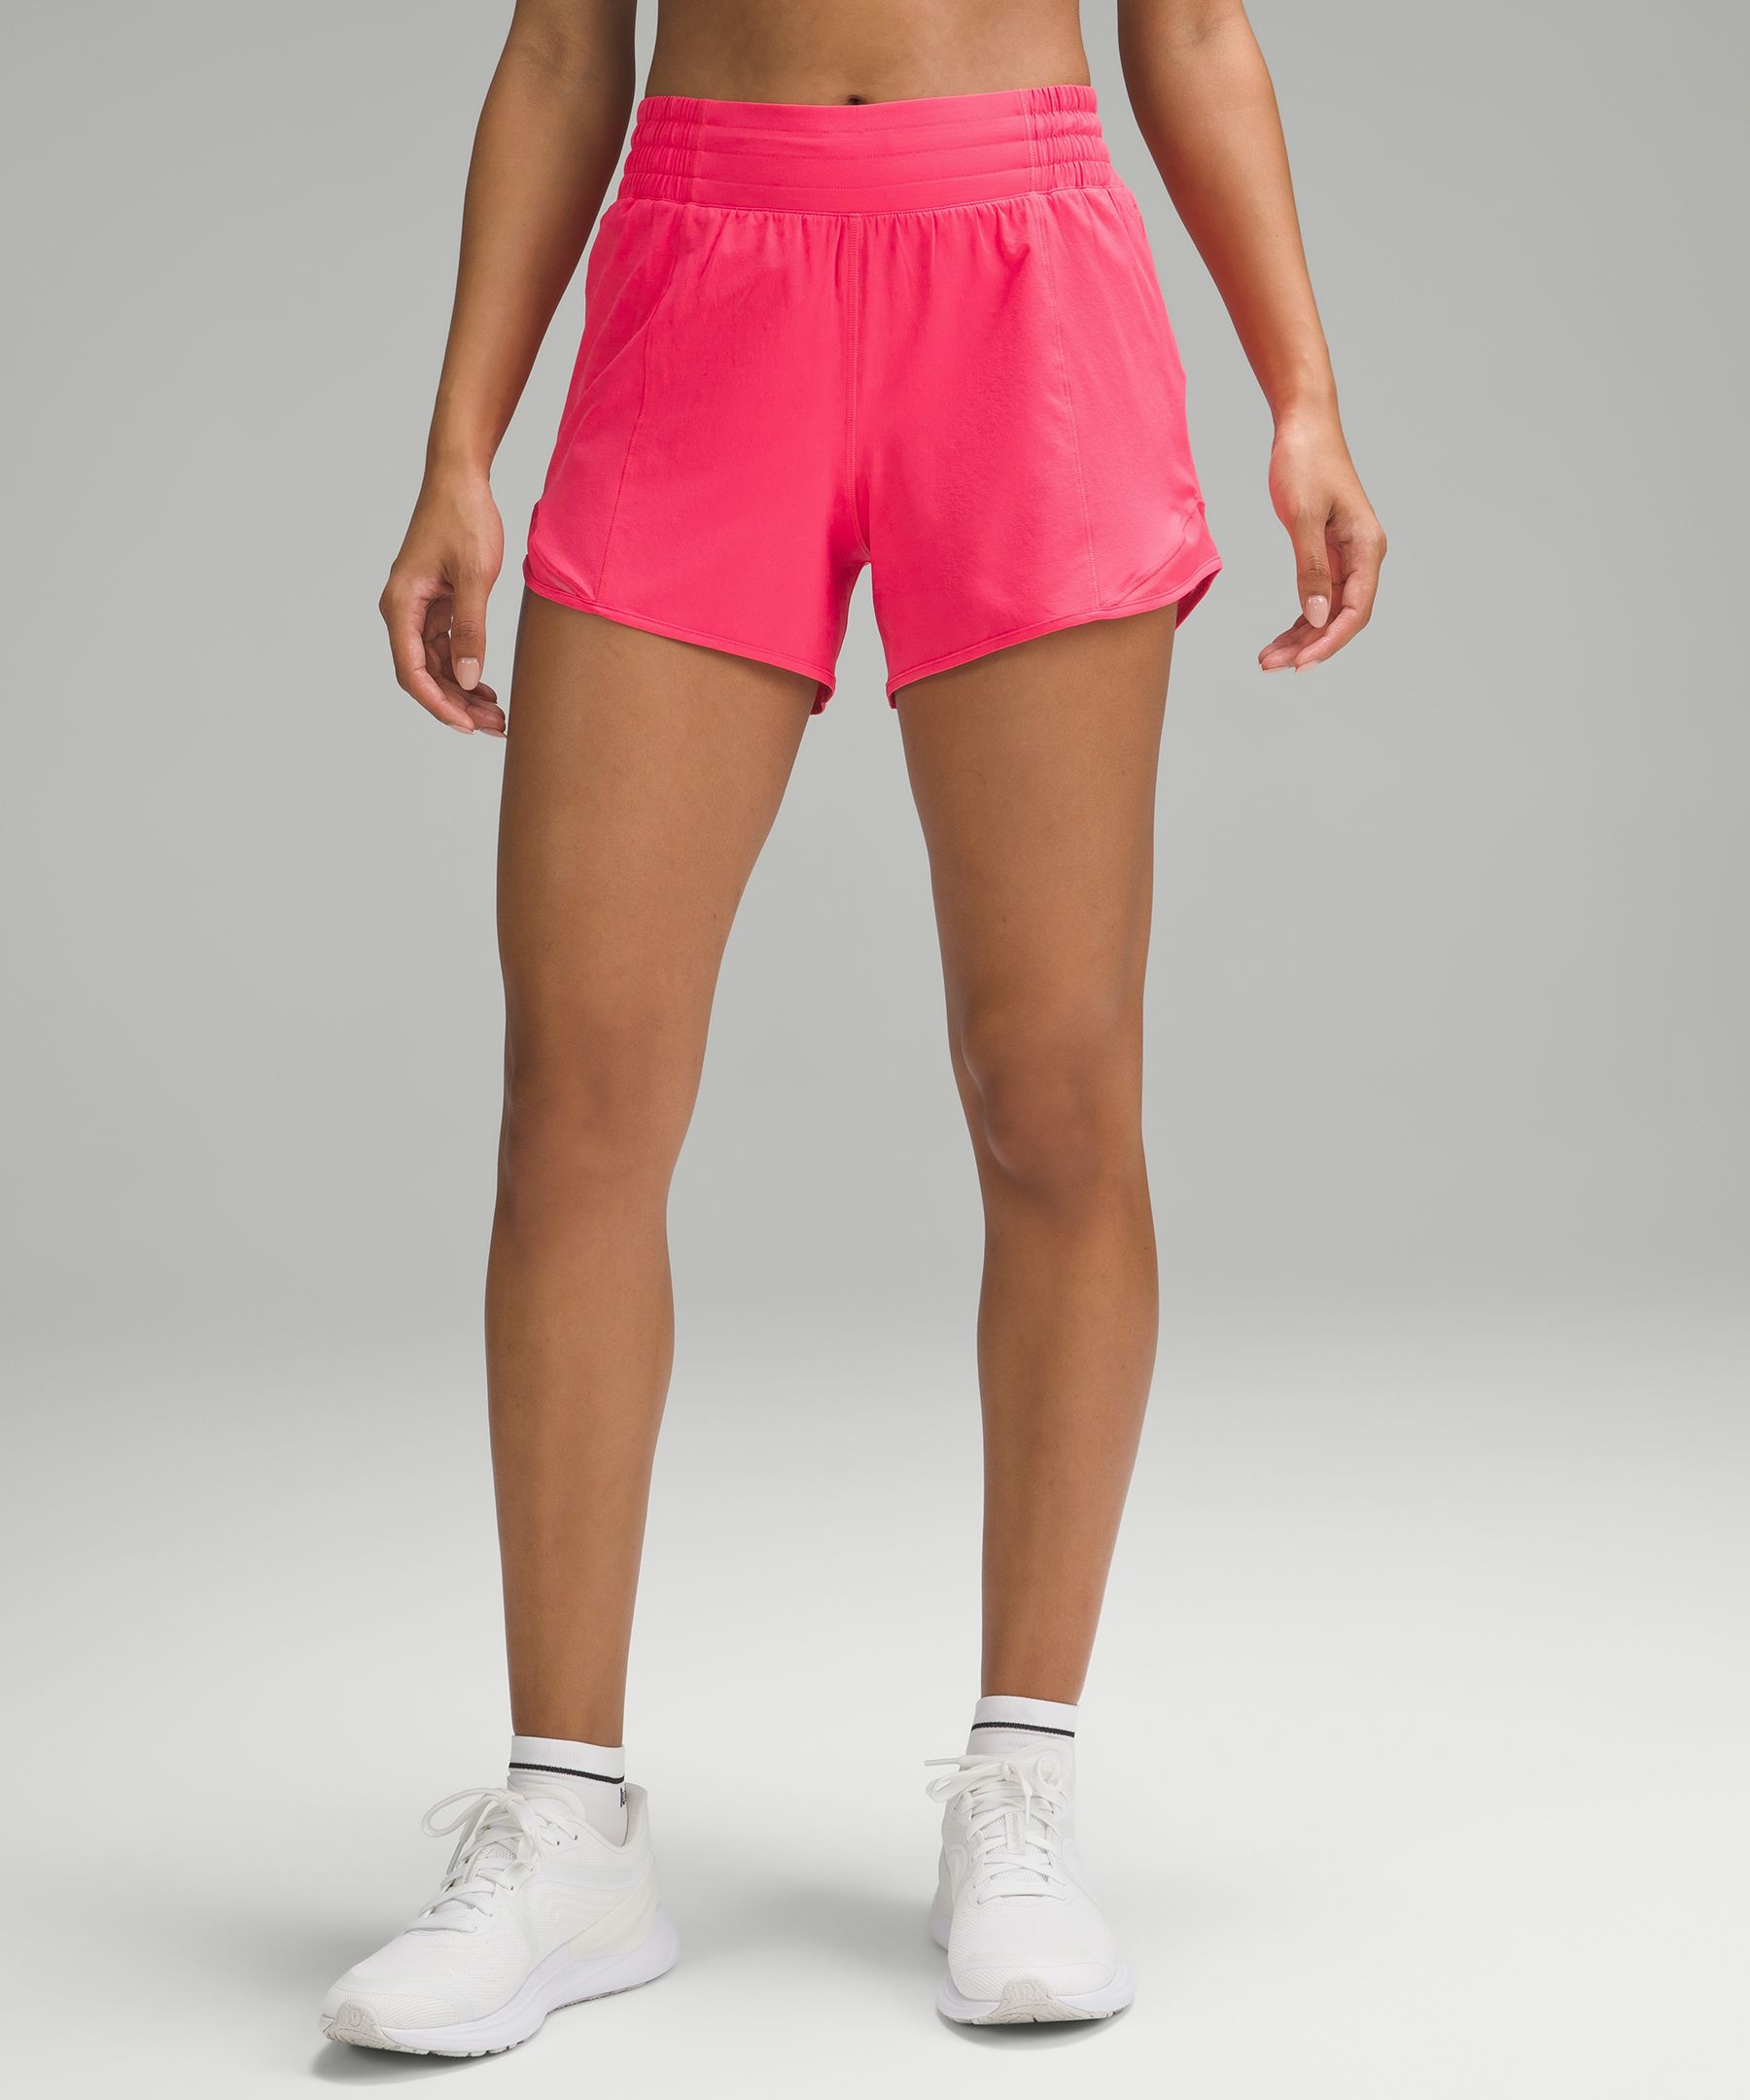 Onvermijdelijk Pionier Boost Hotty Hot High-Rise Lined Short 4" | Women's Shorts | lululemon